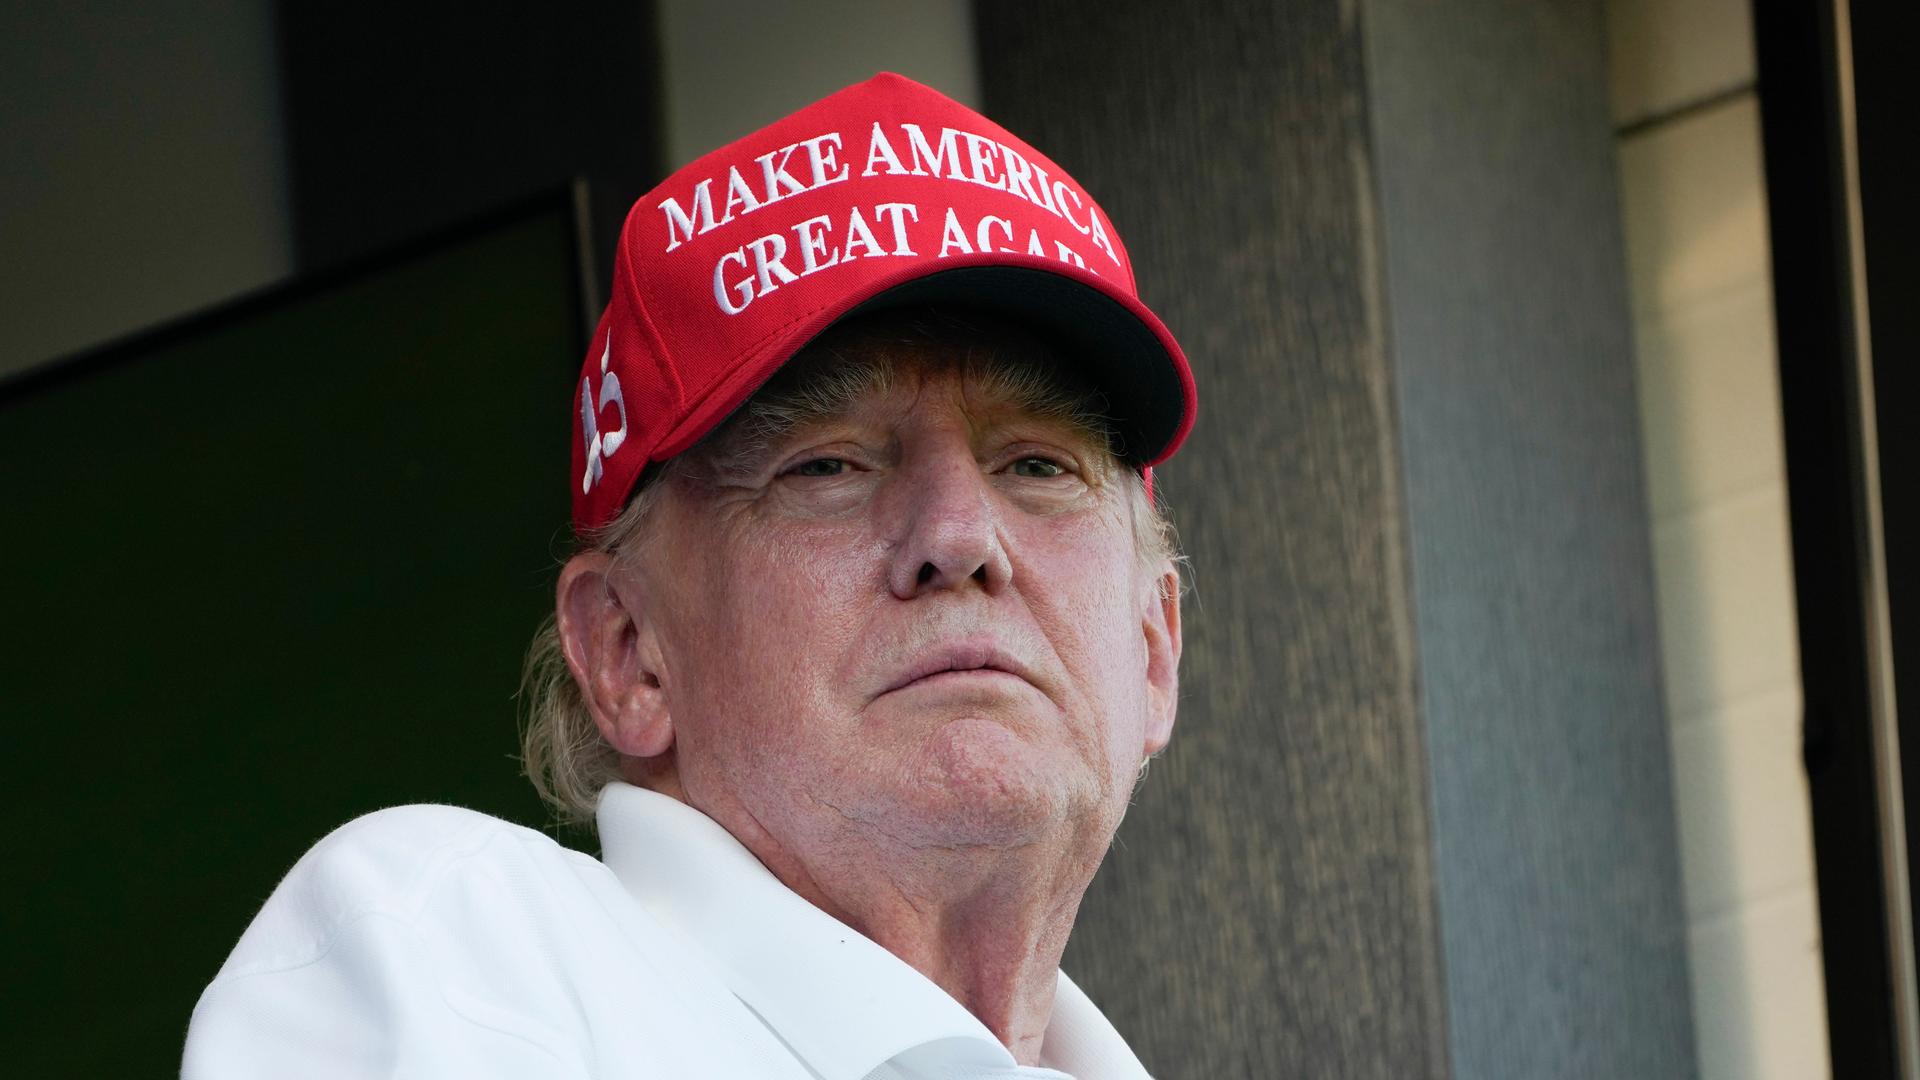 Der frühere US-Präsident Donald Trump trägt bei einem Golf-Spiel eine rote Baseball-Kappe mit der Aufschrift "Make America great again".